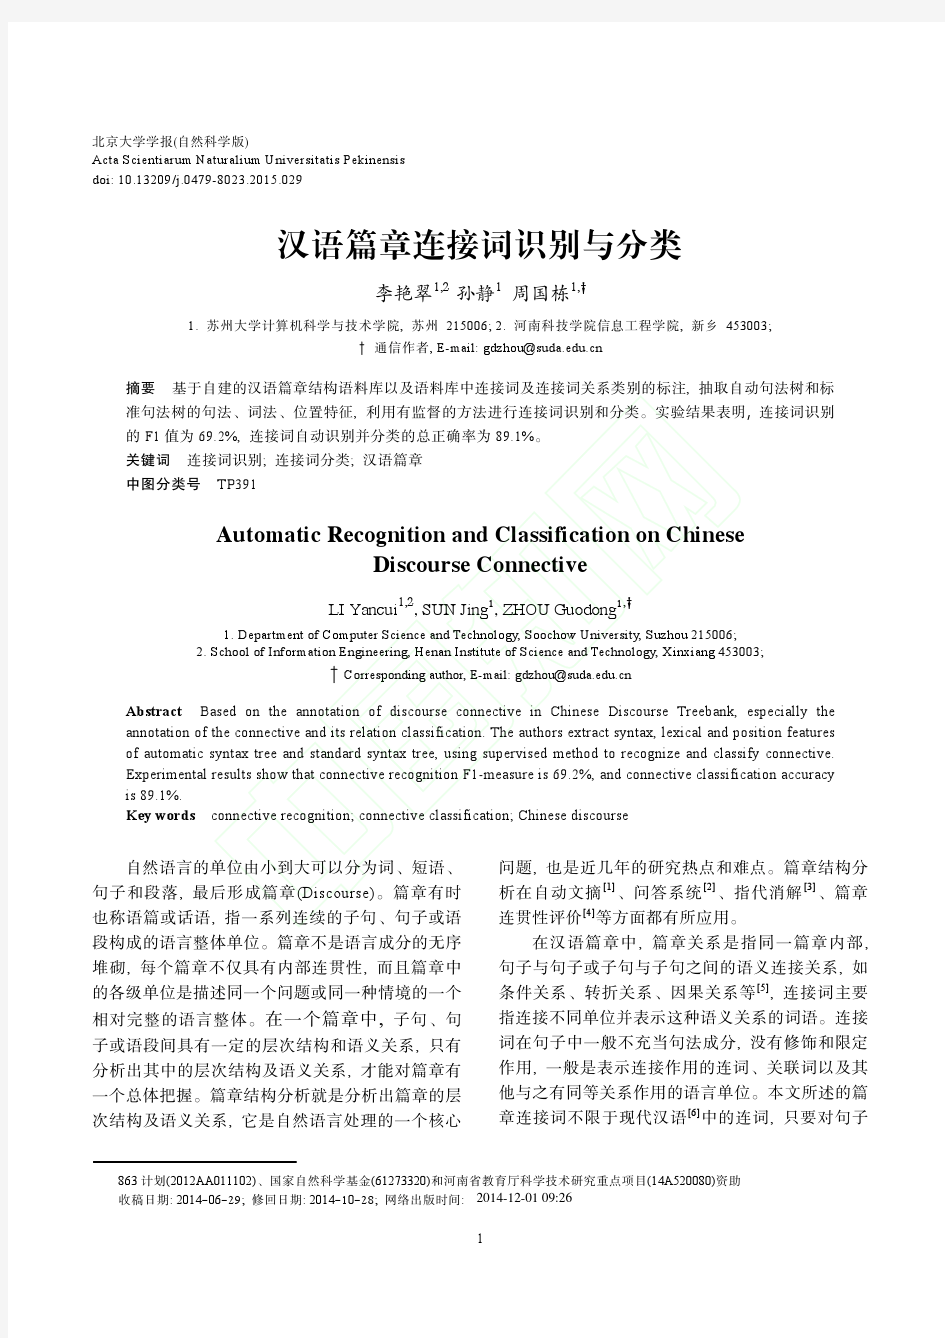 汉语篇章连接词识别与分类 - 中国计算机学会中文信息技术